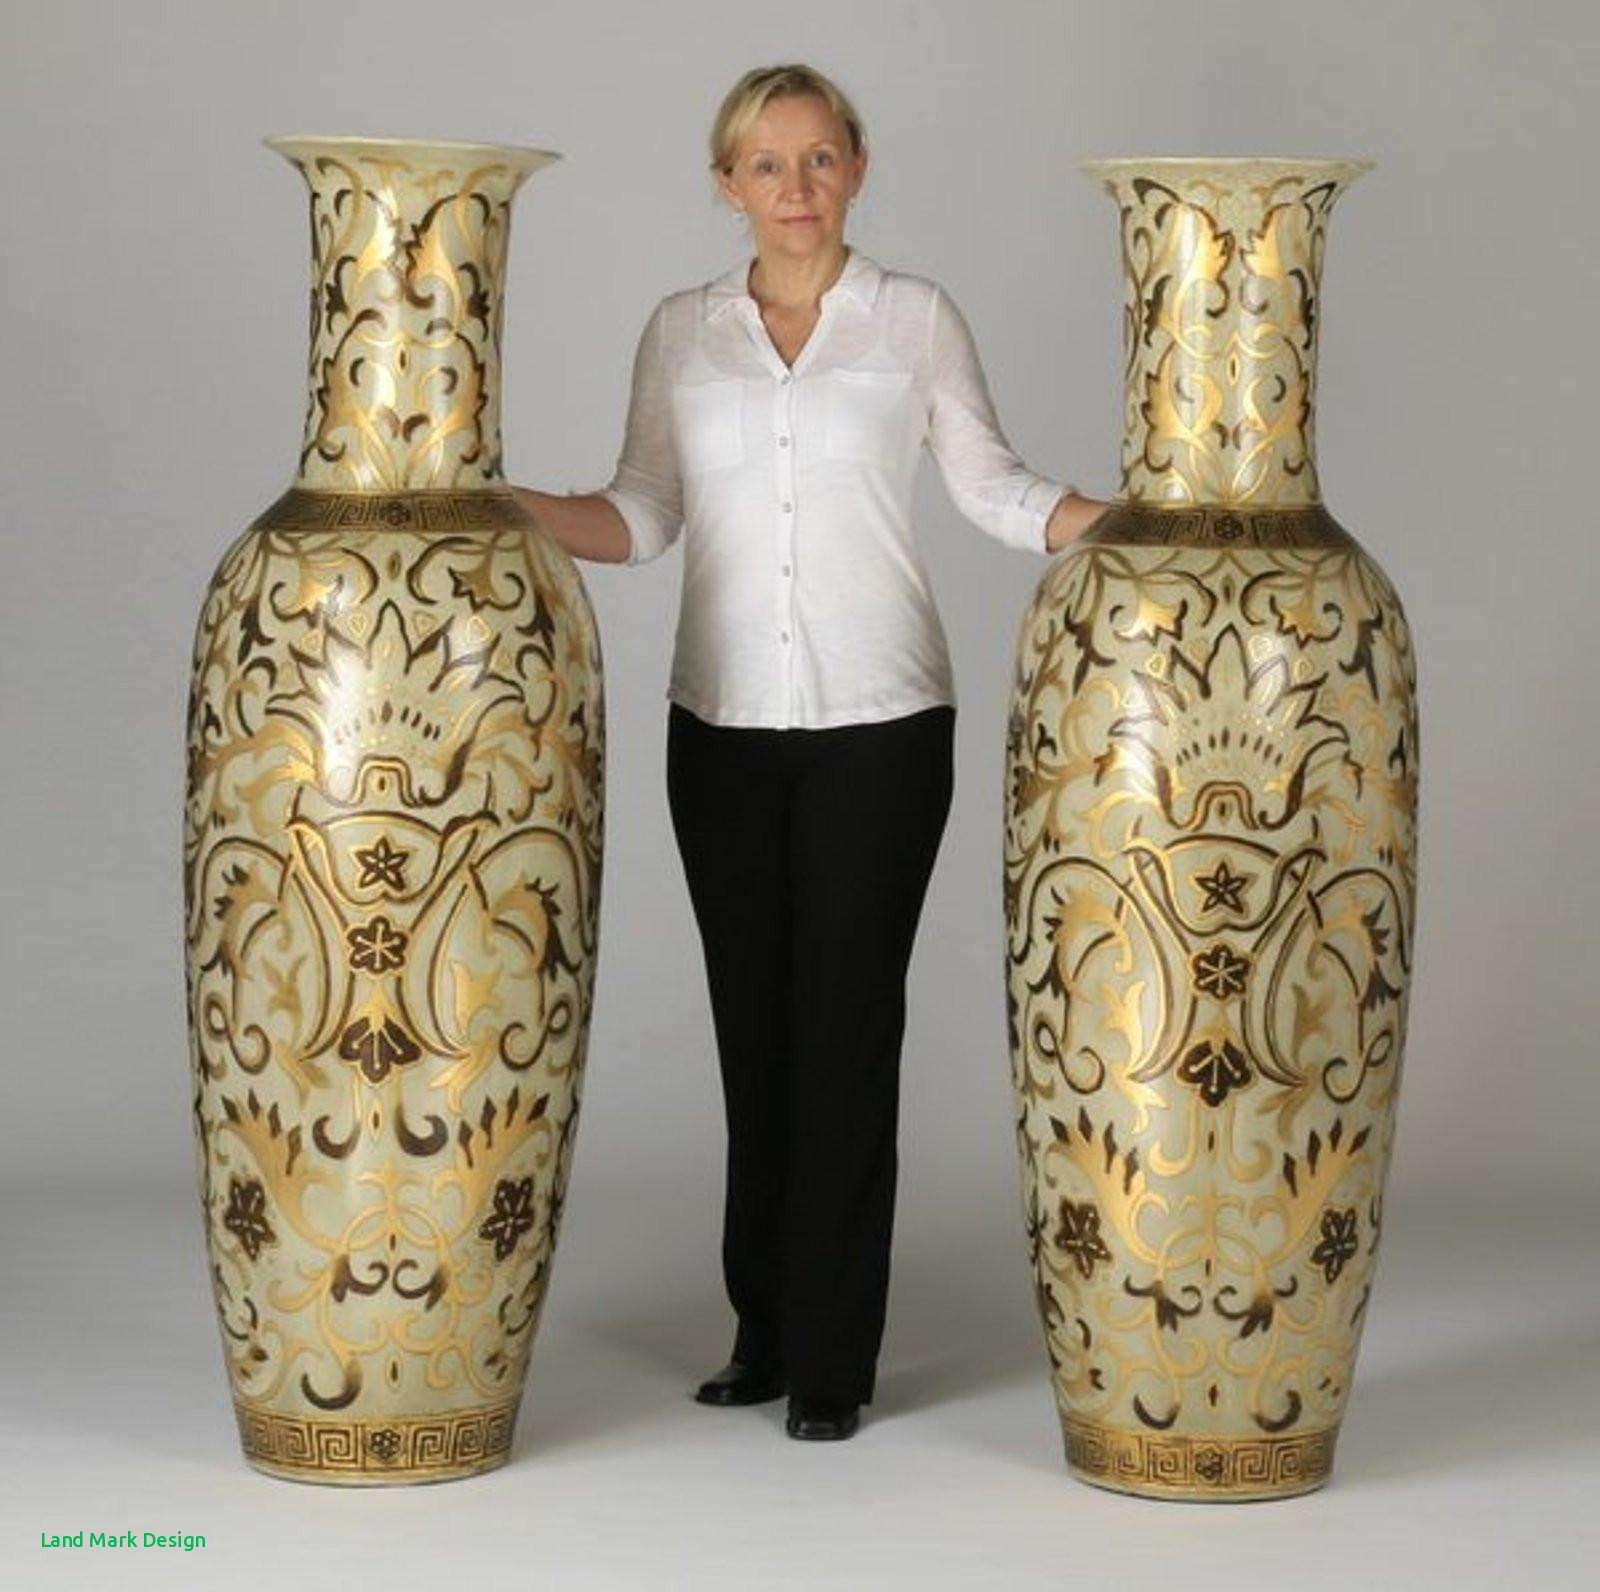 mirrored floor vase of oversized floor vases home design intended for full size of living room white floor vase luxury h vases oversized floor i 0d large